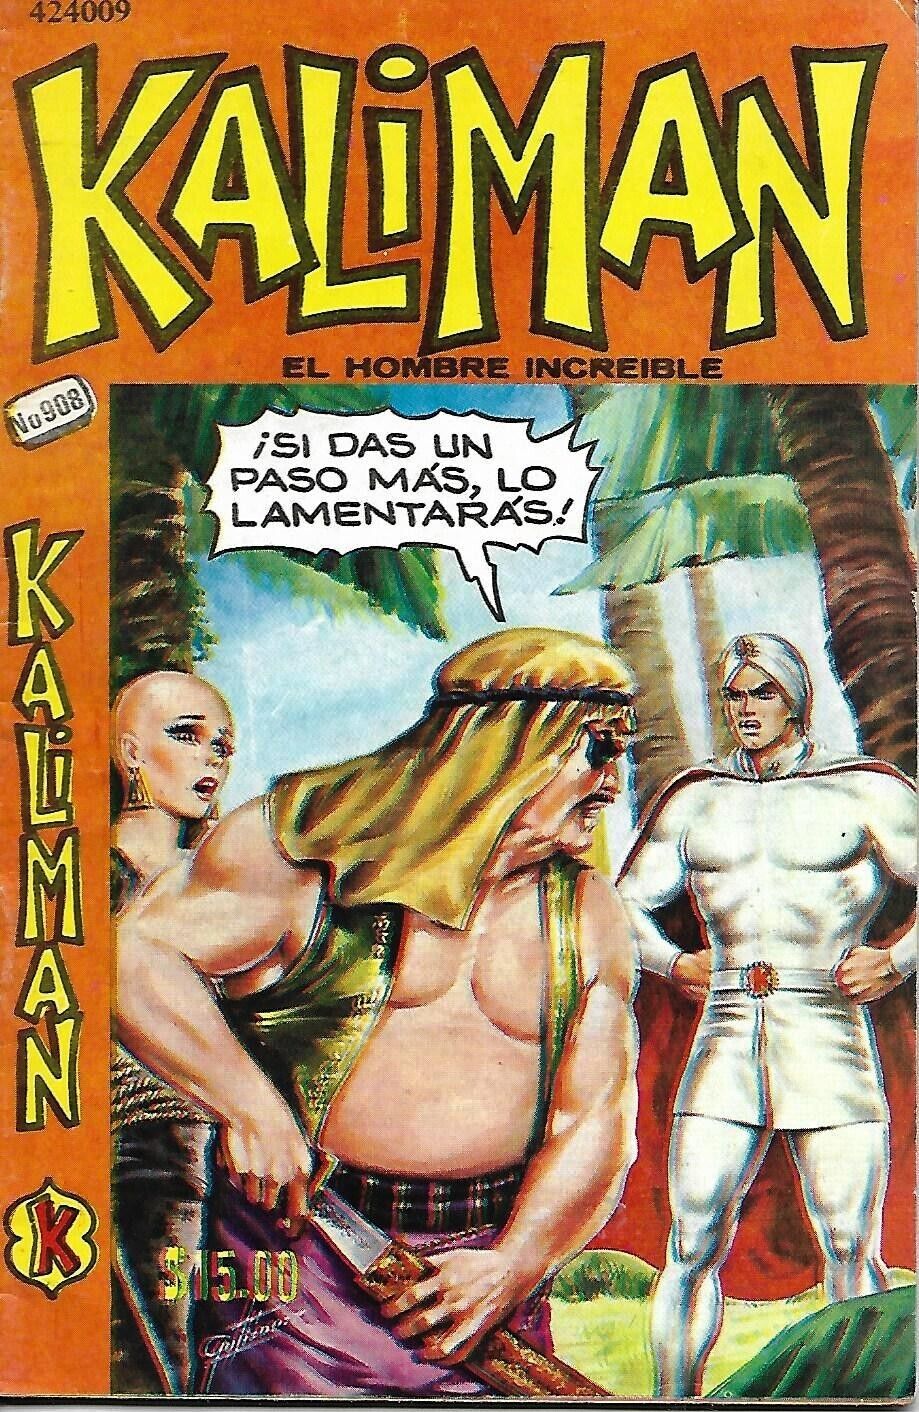 Kaliman El Hombre Increible #908 - Abril 22, 1983 - Mexico